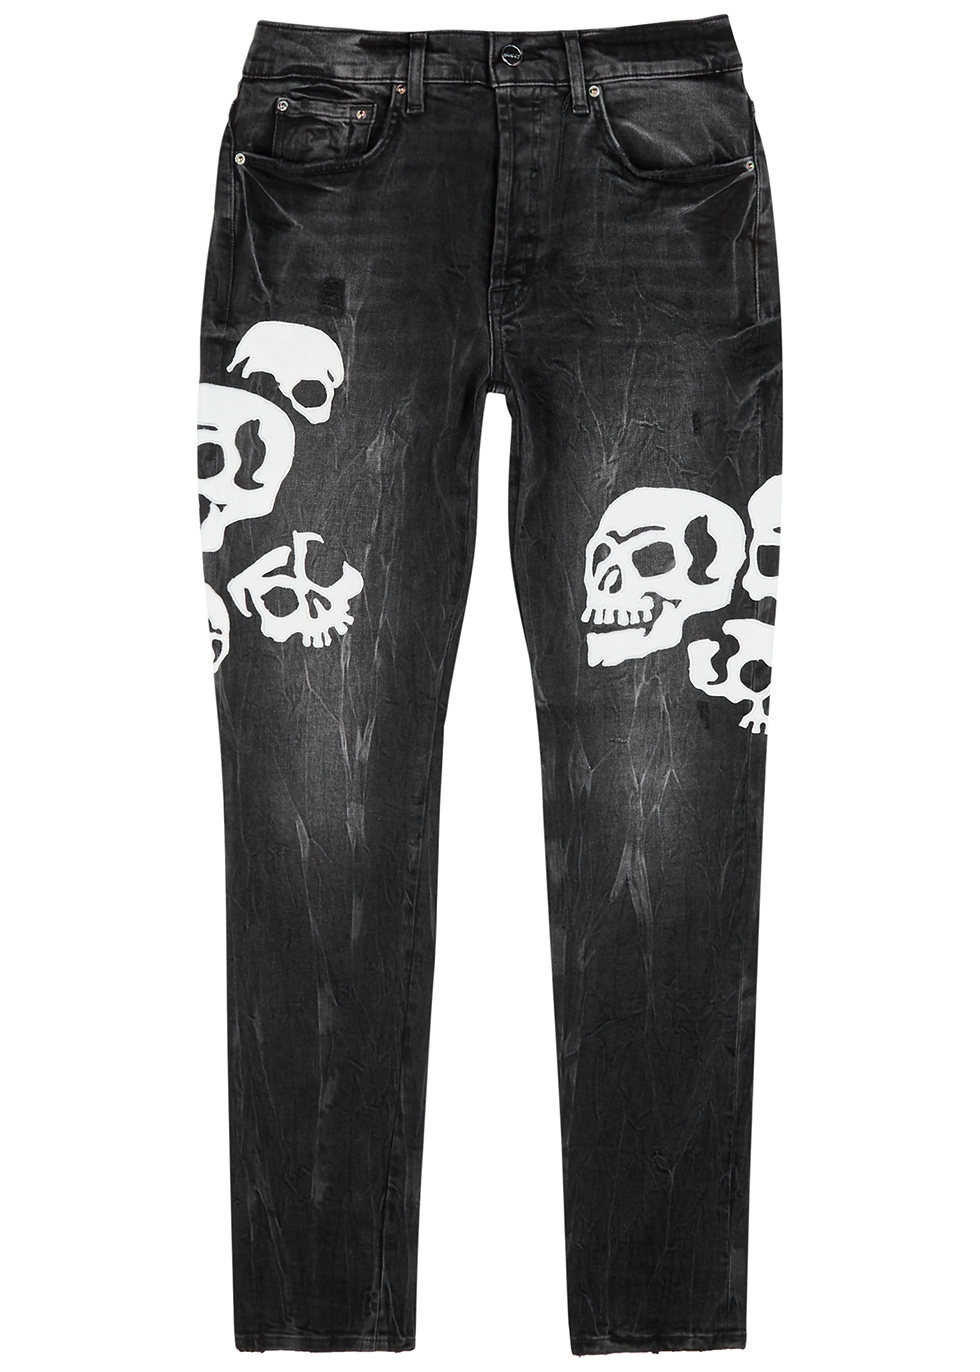 BOSSI Sportswear Skull black distressed skinny jeans